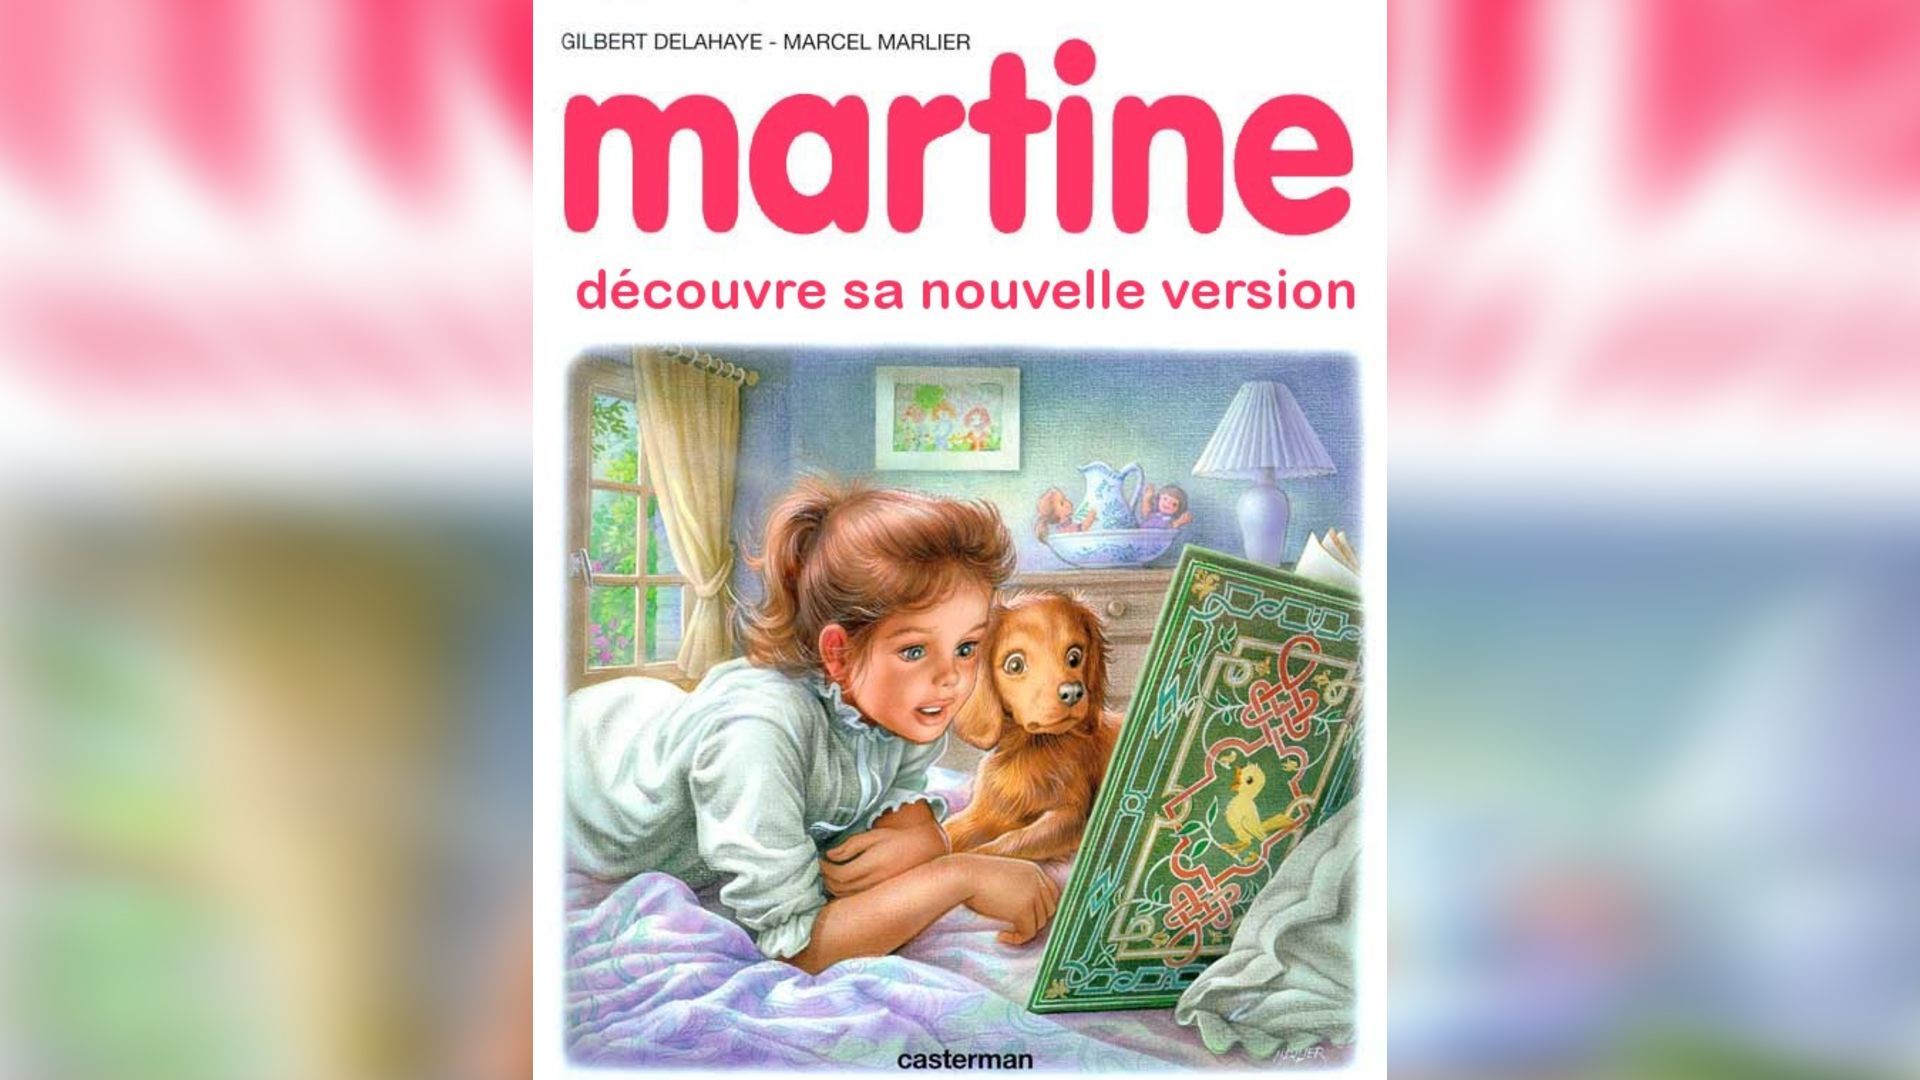 La couverture ci-dessus n'est pas issue d'un véritable album de Martine. Elle a été créée à l'aide du "générateur de couverture Martin" proposé par le site retourdemartine.free.fr.